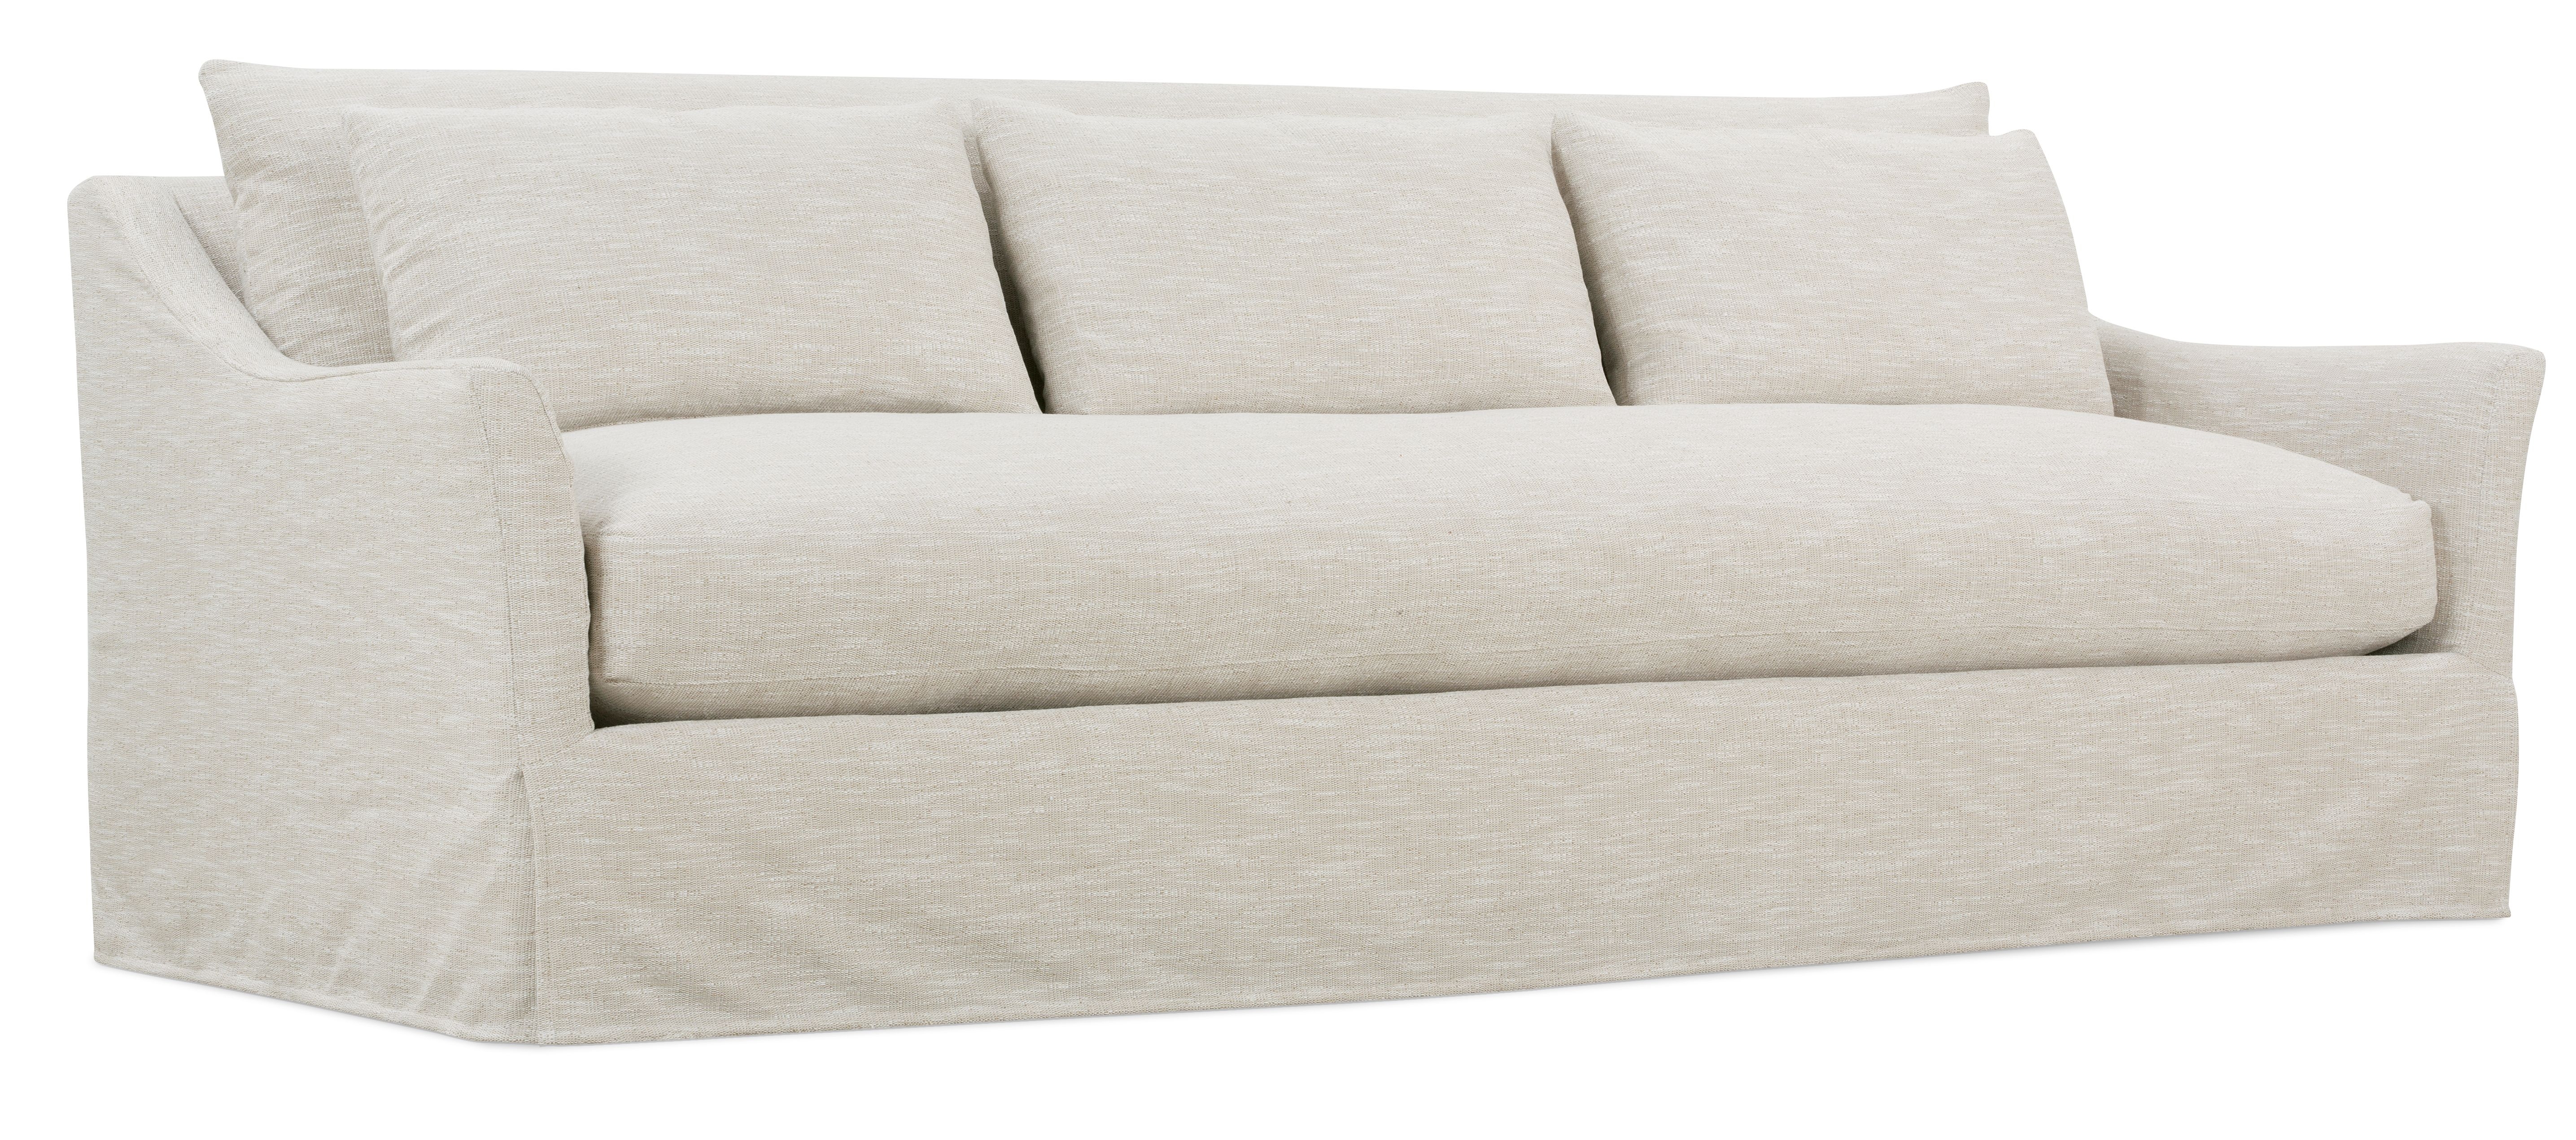 Fraser Slipcover Sofa, Bench Cushion, White, 95" - Image 1